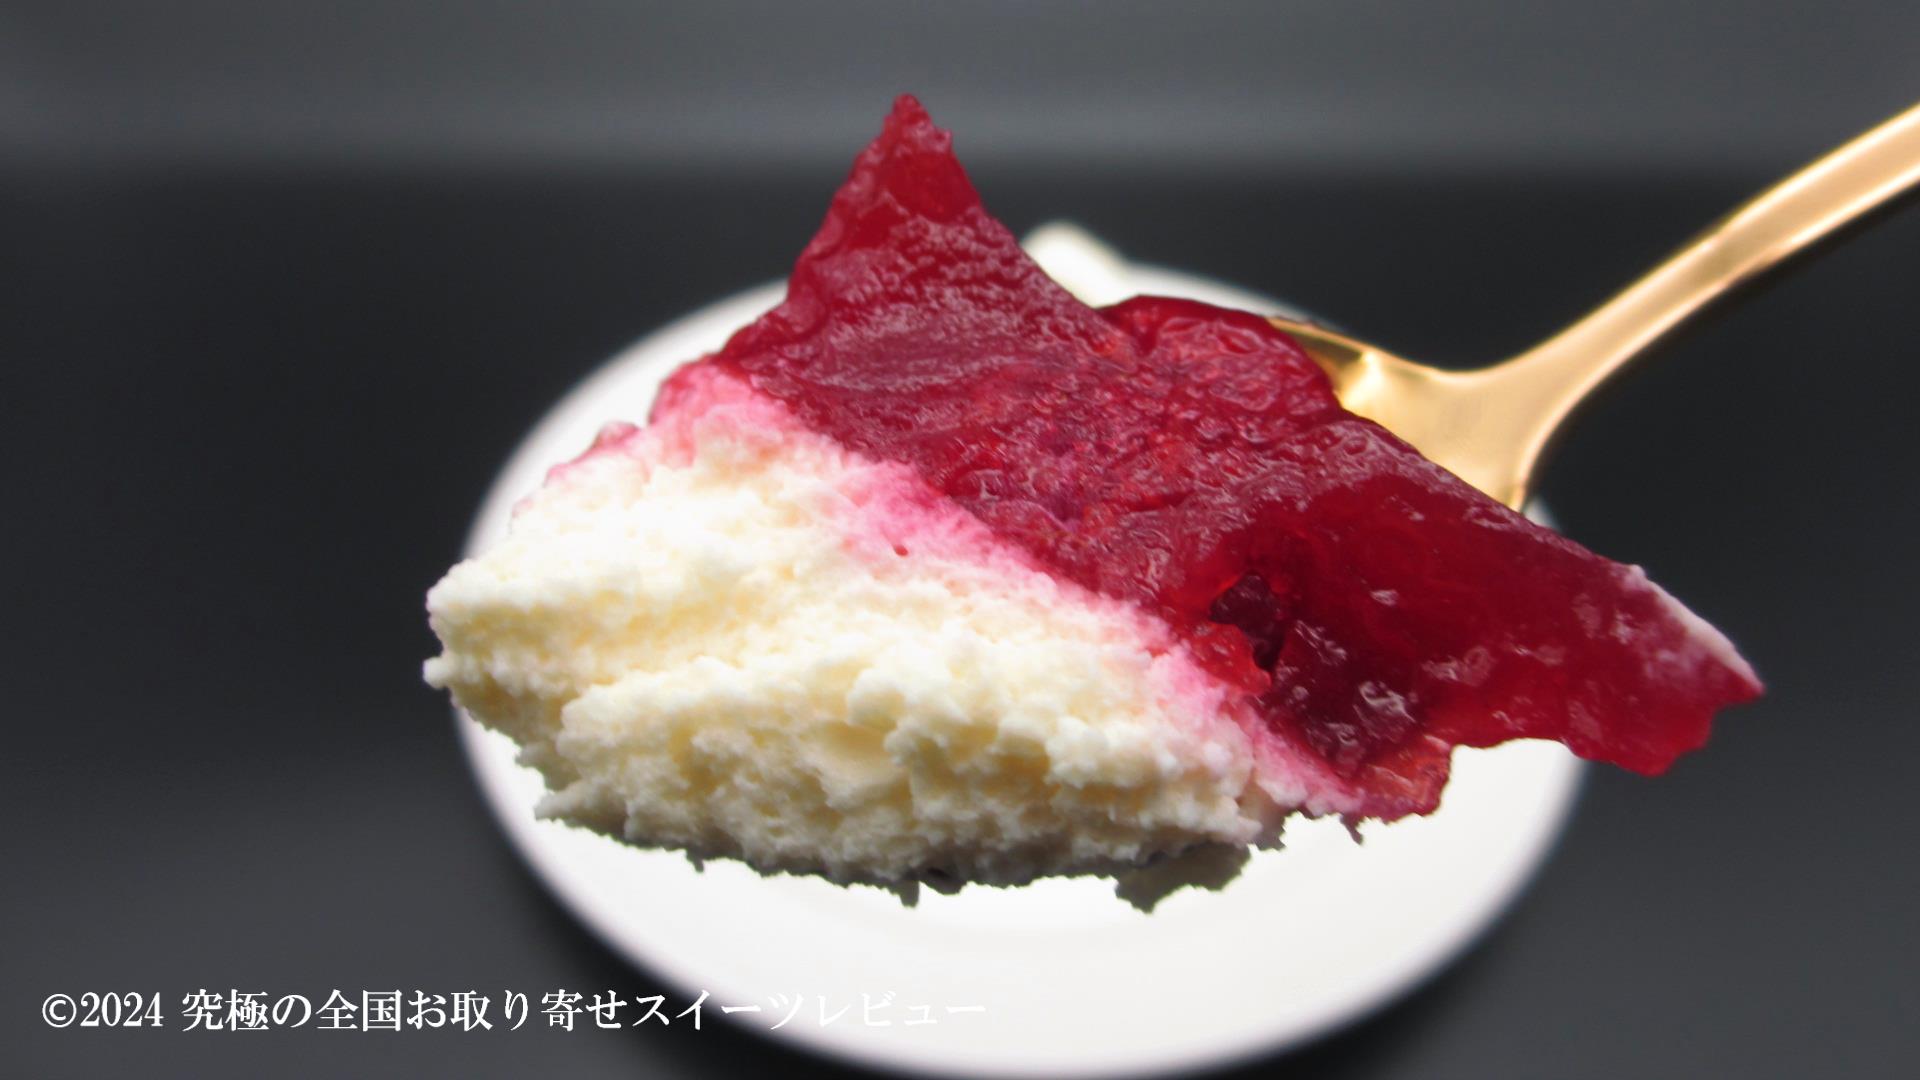 さらに、シュス木苺レアチーズケーキをひと口の画像